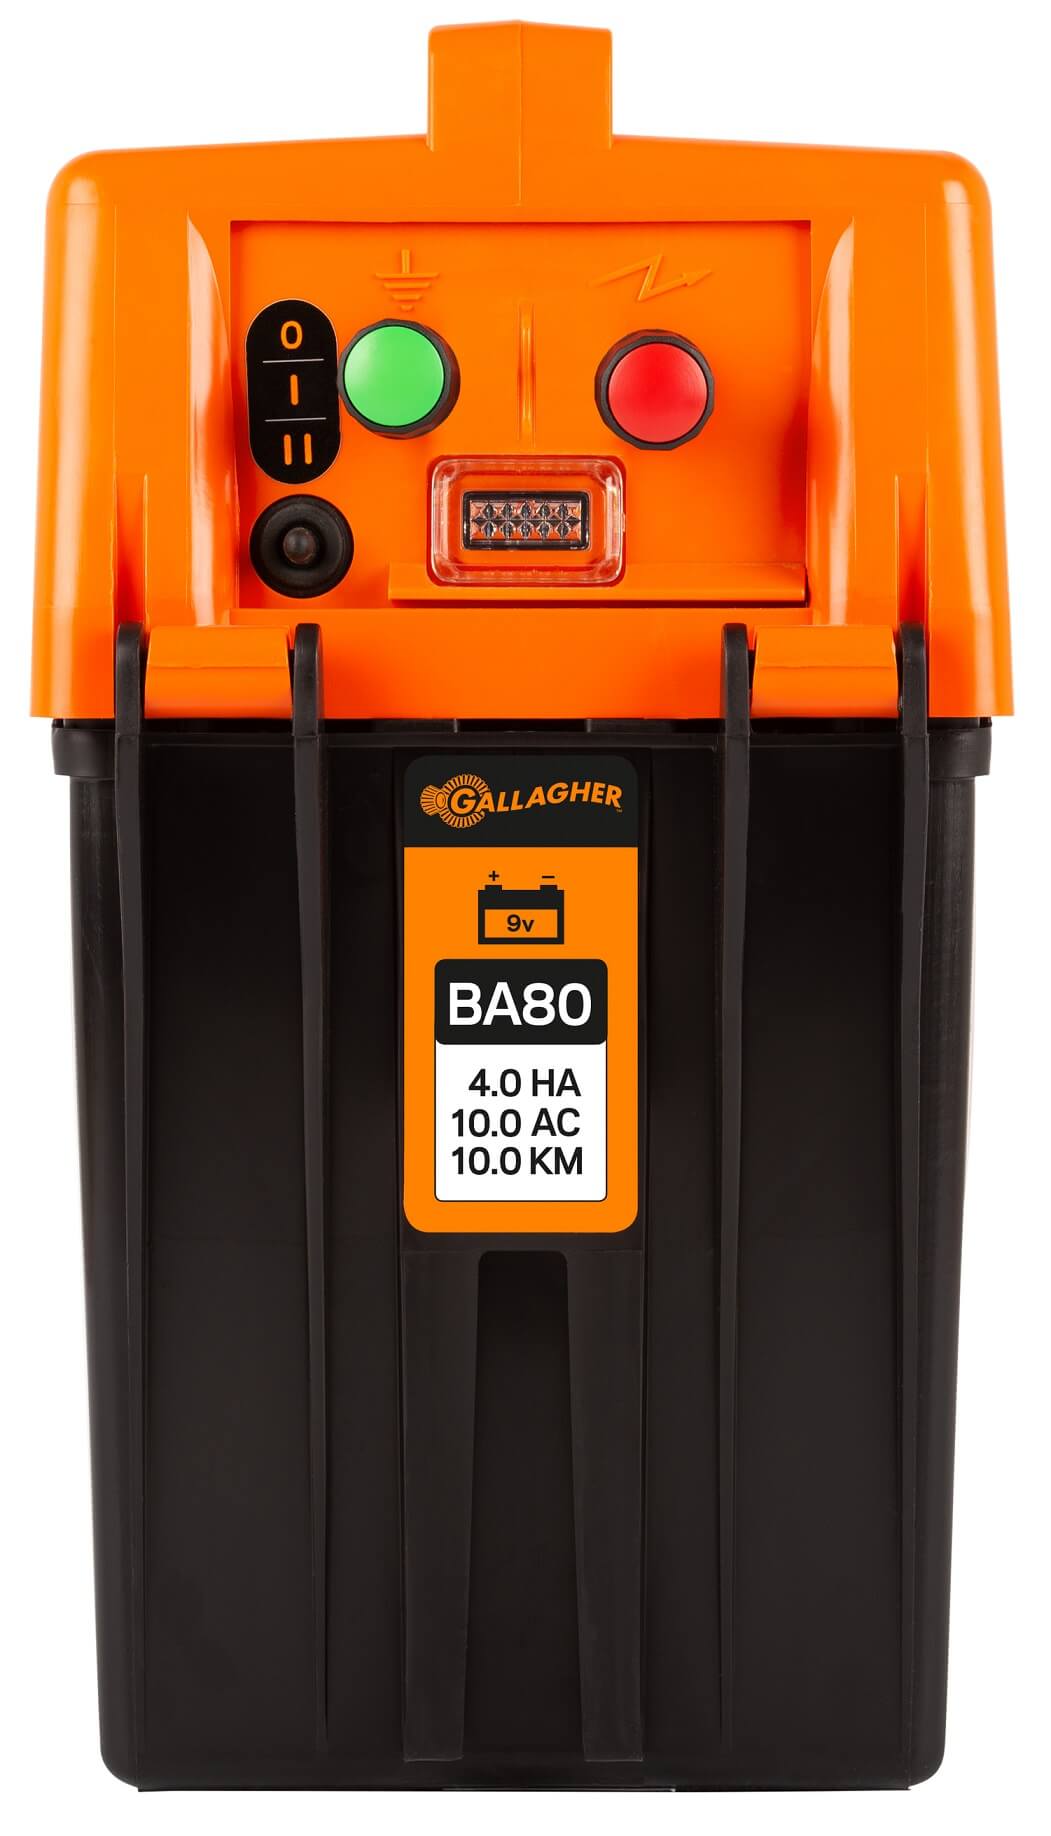 GALLAGHER Weidezaungerät BA80 Batteriegerät 9 V